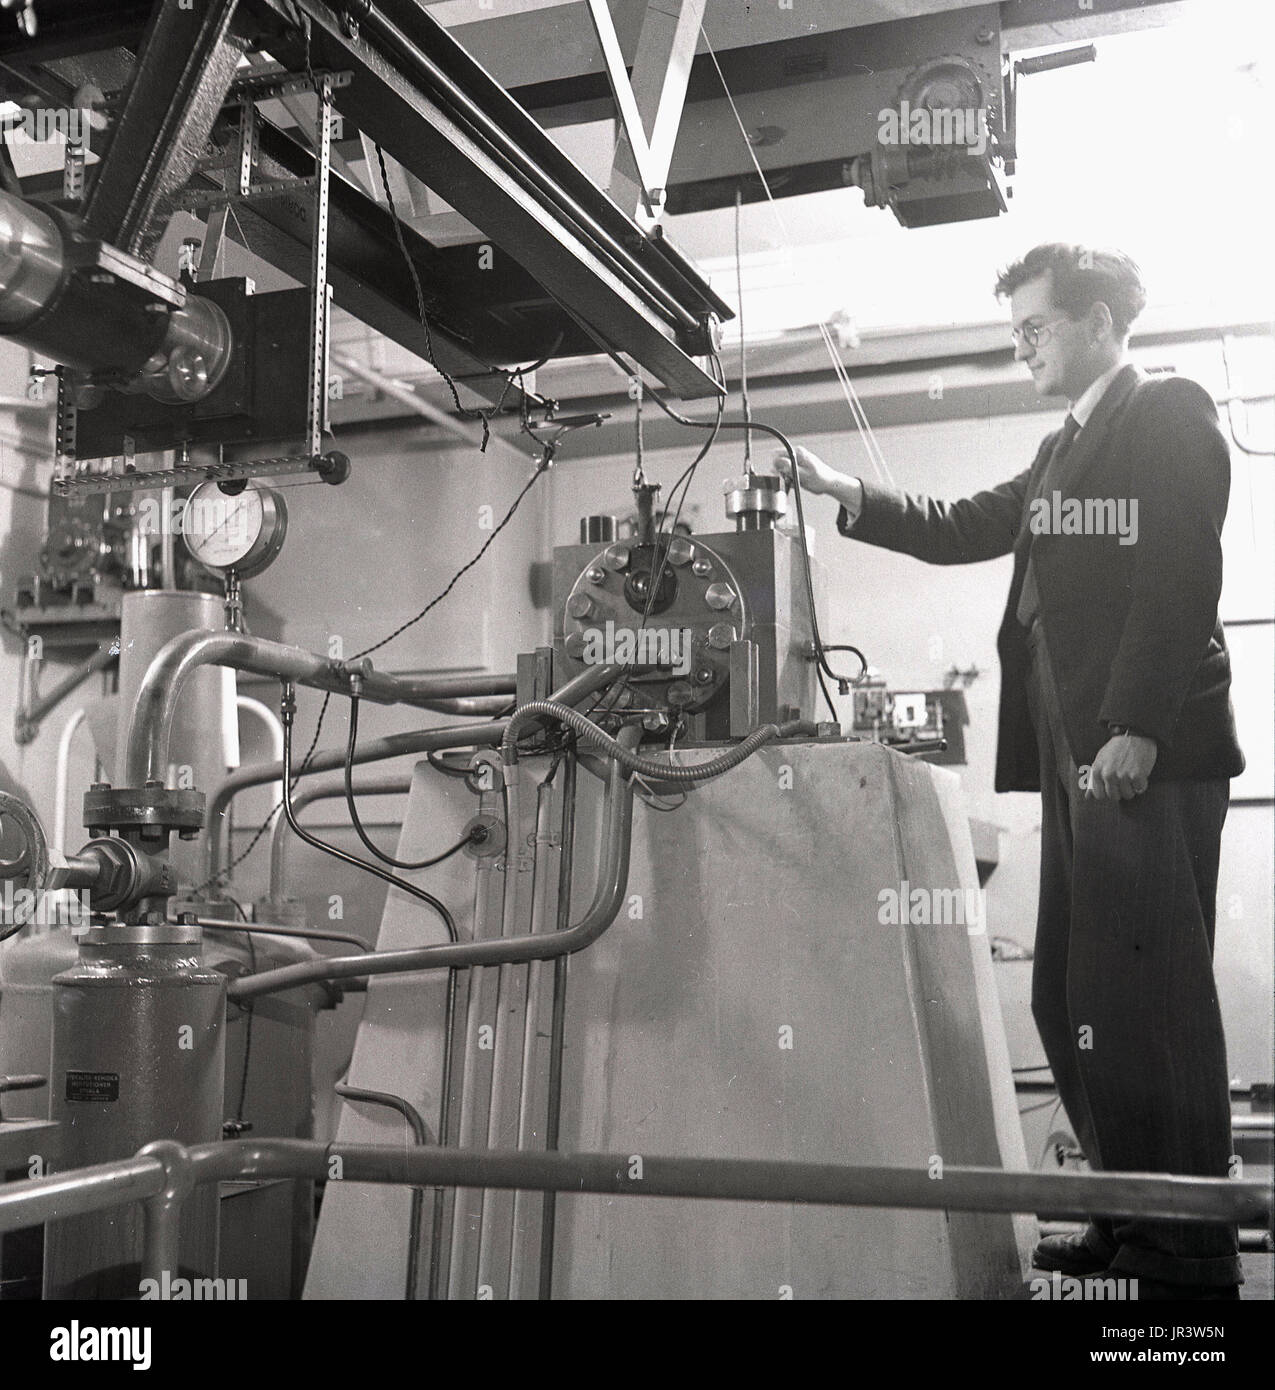 1950, historische, männliche Professor an der Universität Oxford, Oxford, England, Großbritannien, mit einem ultracentrifuge Maschine im biochemischen Labor. Stockfoto